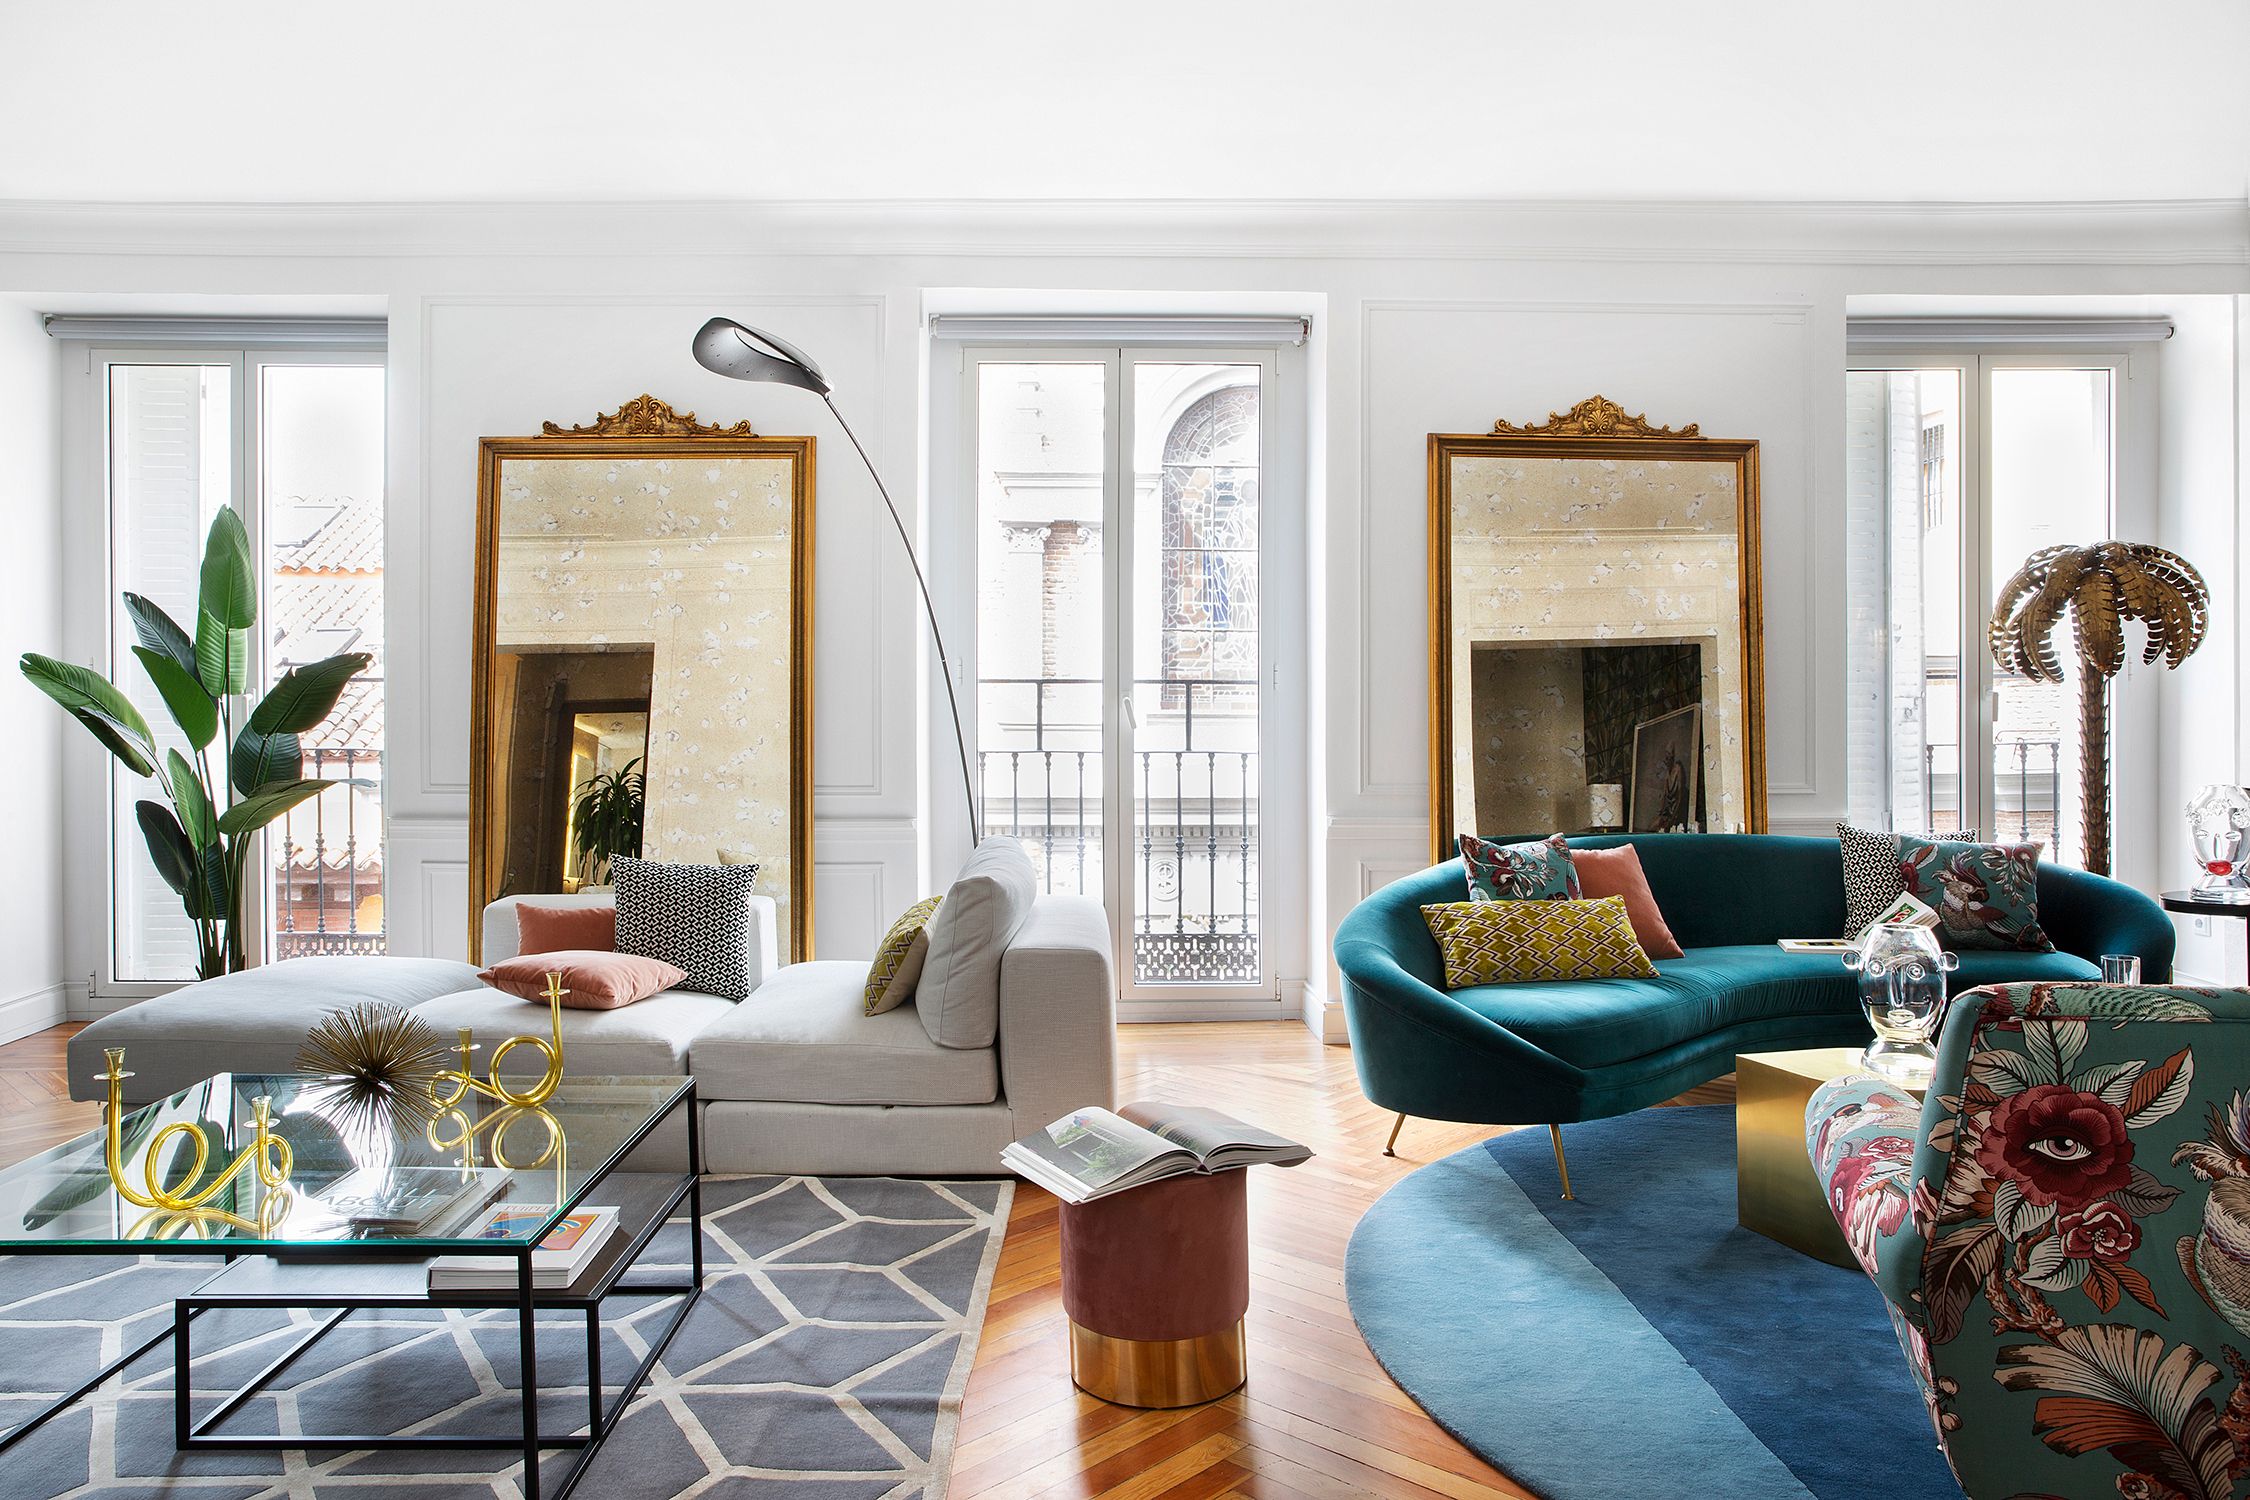 Un piso de estilo ecléctico, elegante y moderno con mucho color